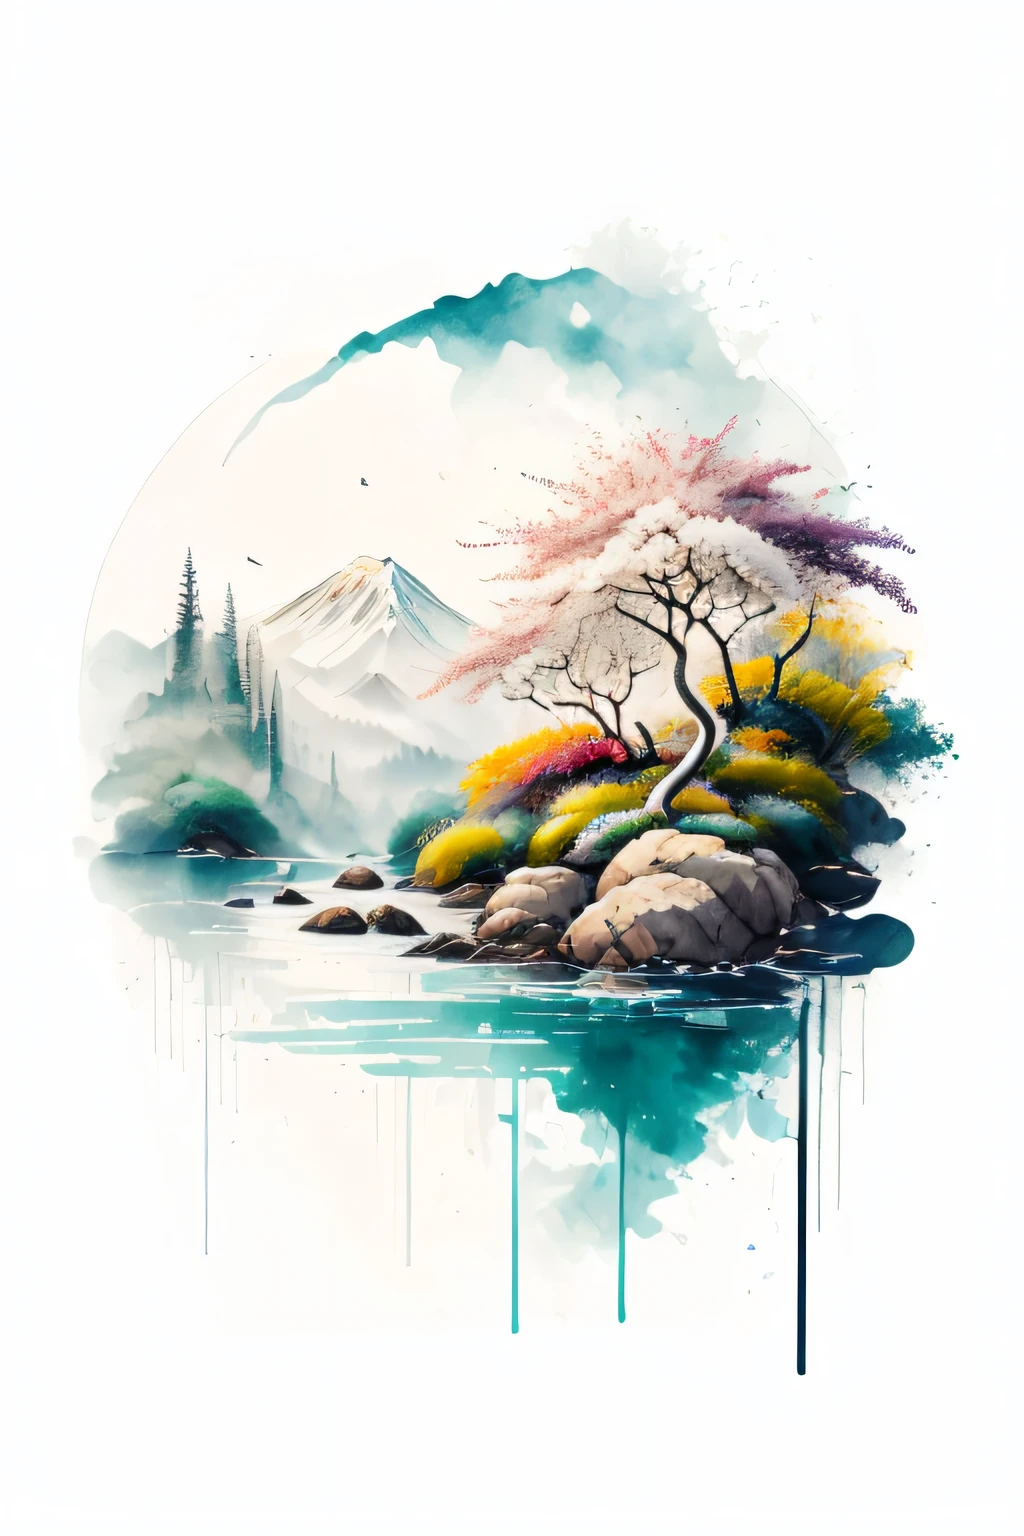 (fond blanc: 1.3), T-shirt, paysage, Rio, eau, des arbres, des oiseaux, intelligent